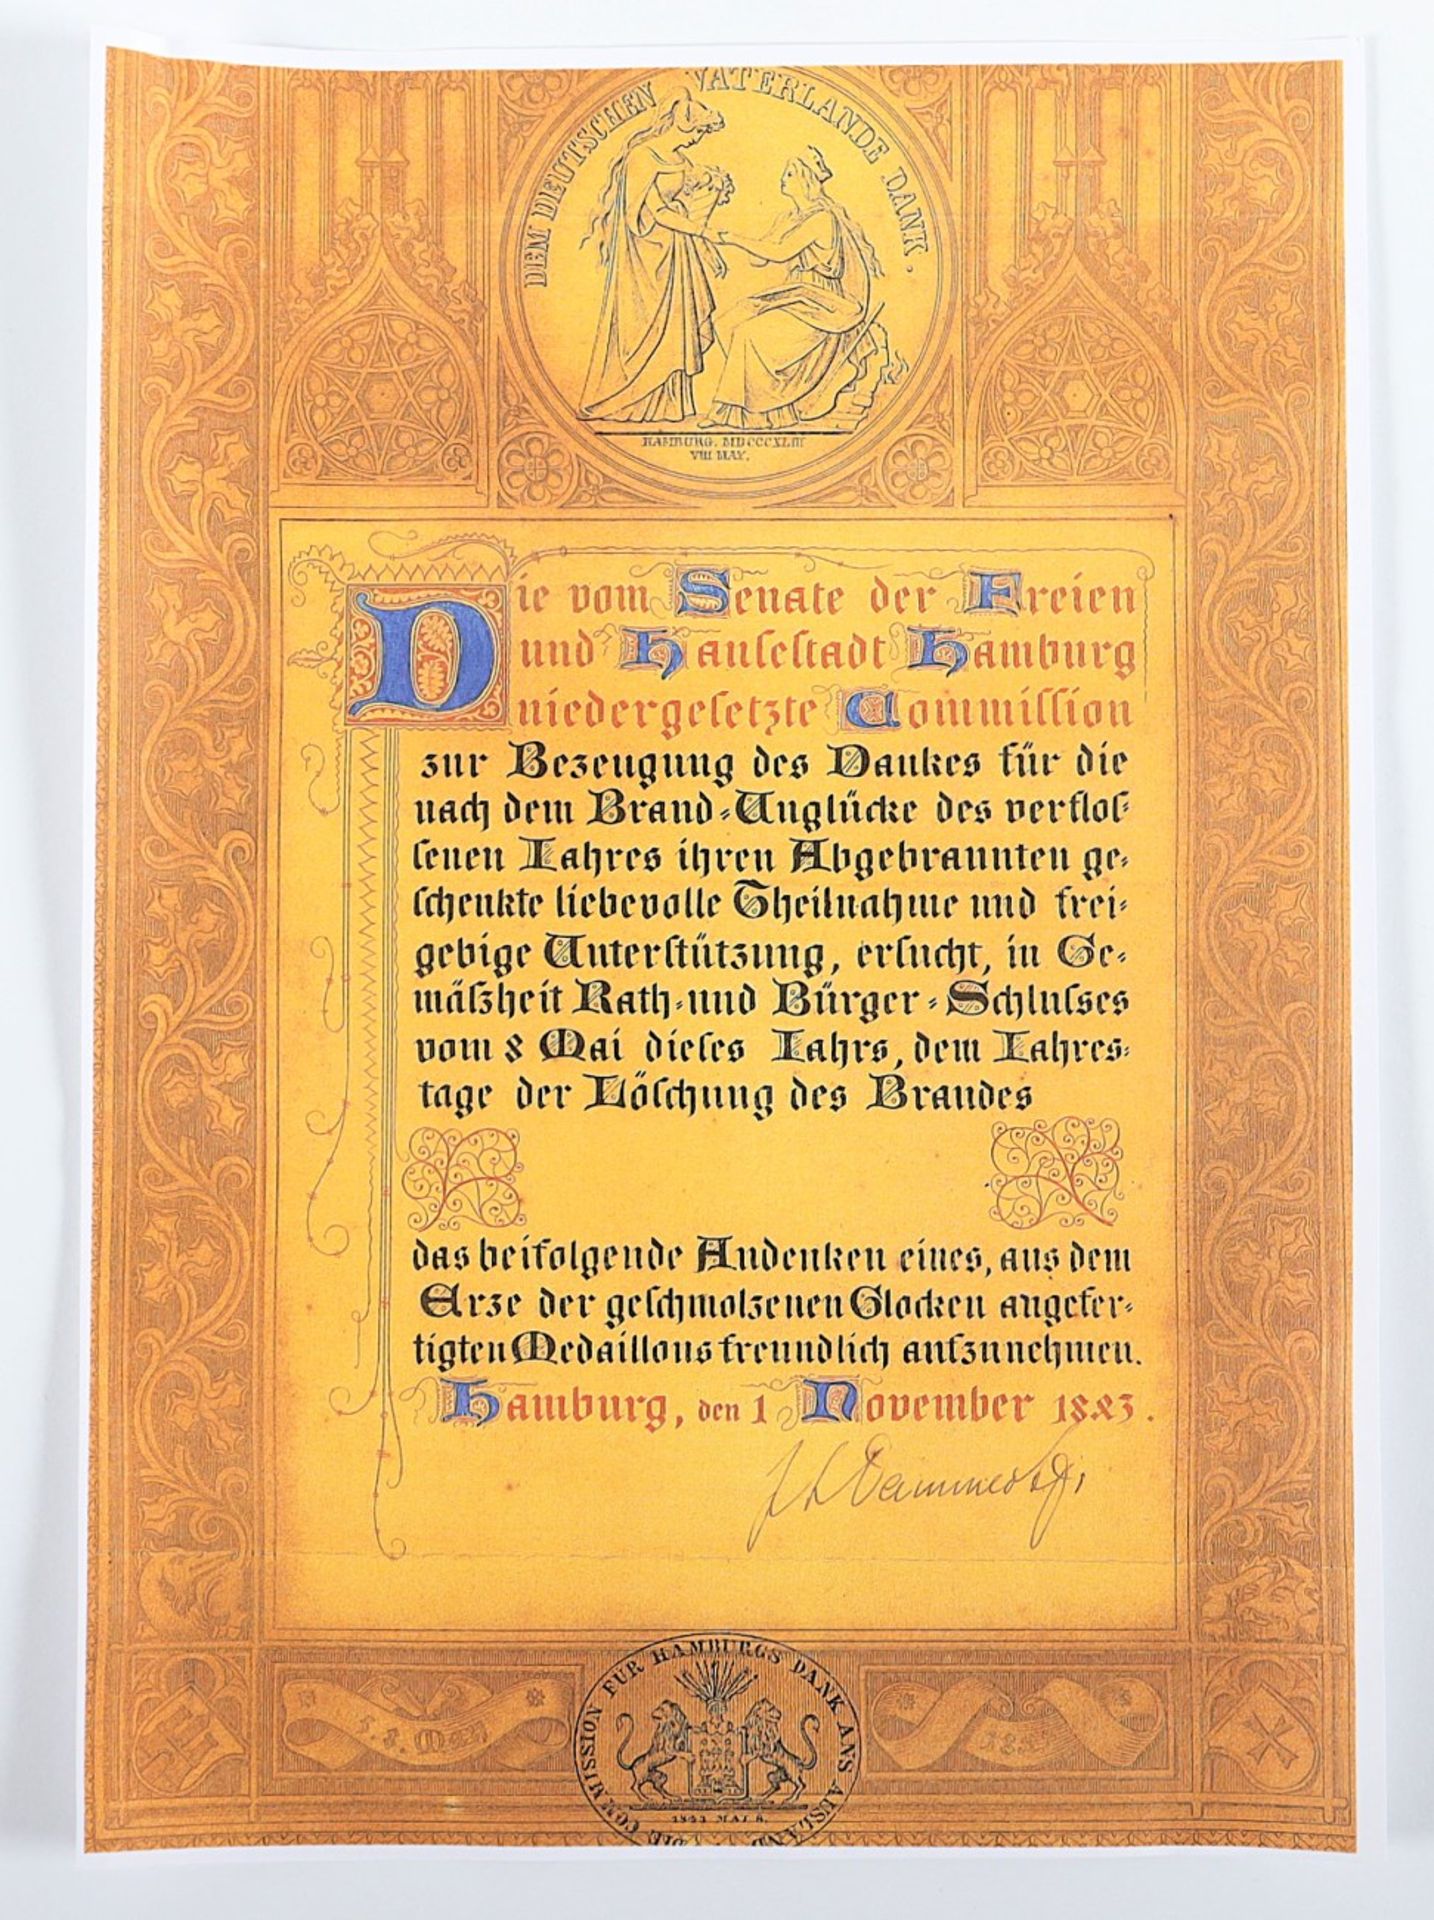 SELTENE MEDAILLE STADTBRAND HAMBURG 1842, große Bronzegussmedaille (Dm 16,5) ausgegeben für die Hil - Bild 3 aus 3